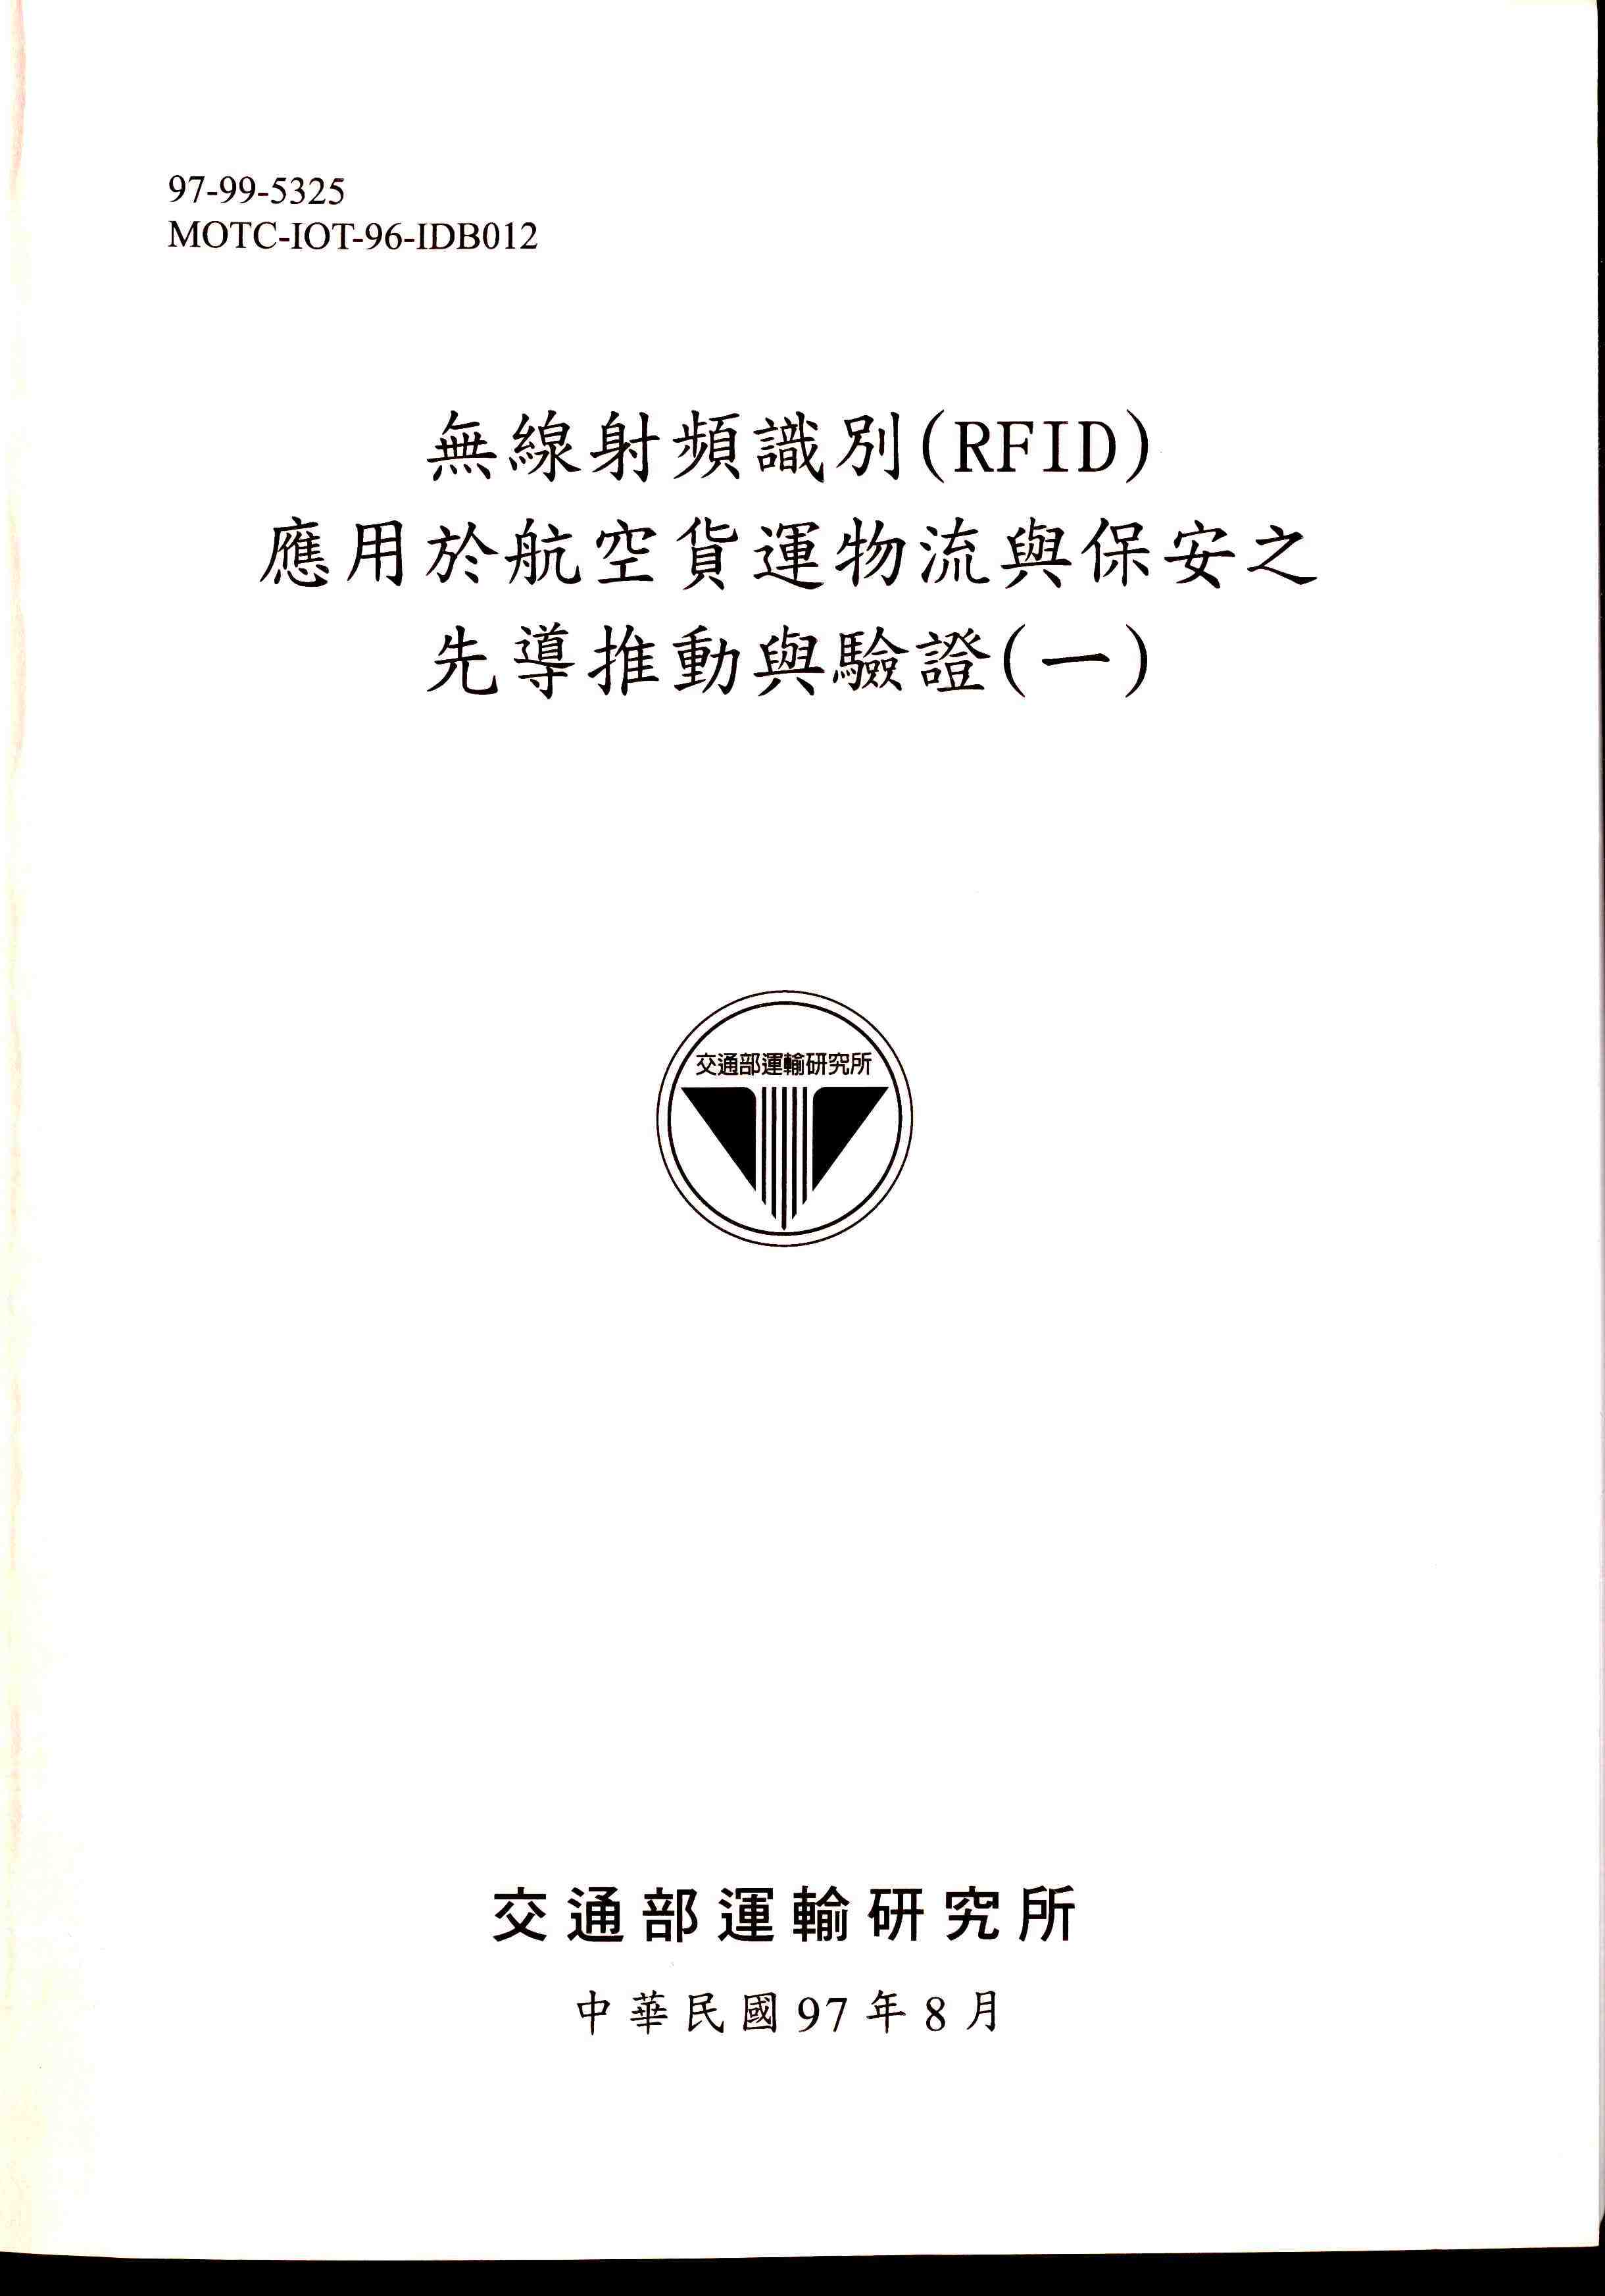 無線射頻識別(RFID)應用於航空貨運物流與保安之先導推動與驗證(一)